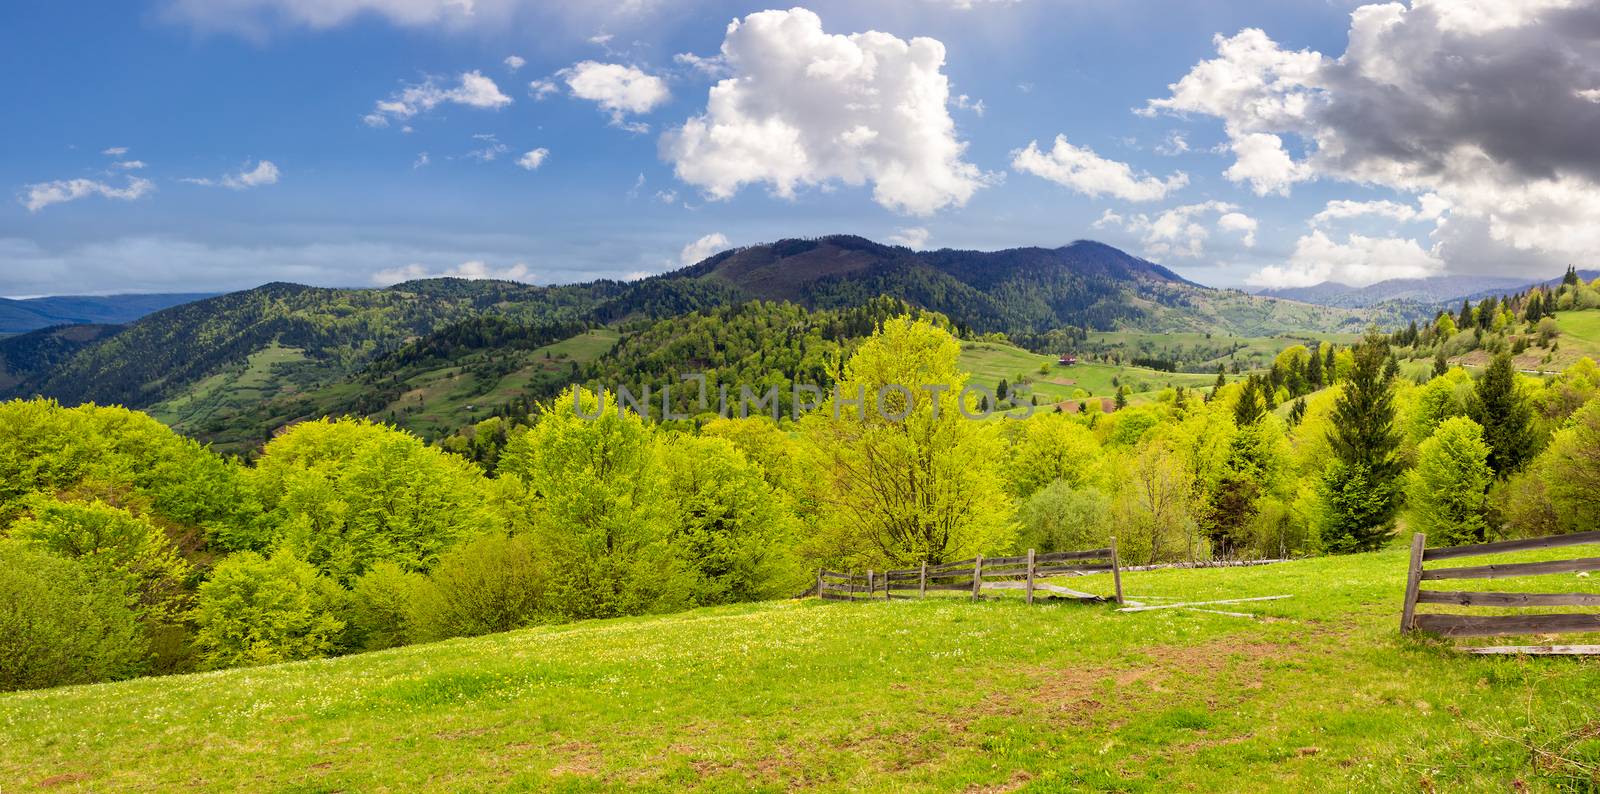 fence on hillside meadow in mountain by Pellinni